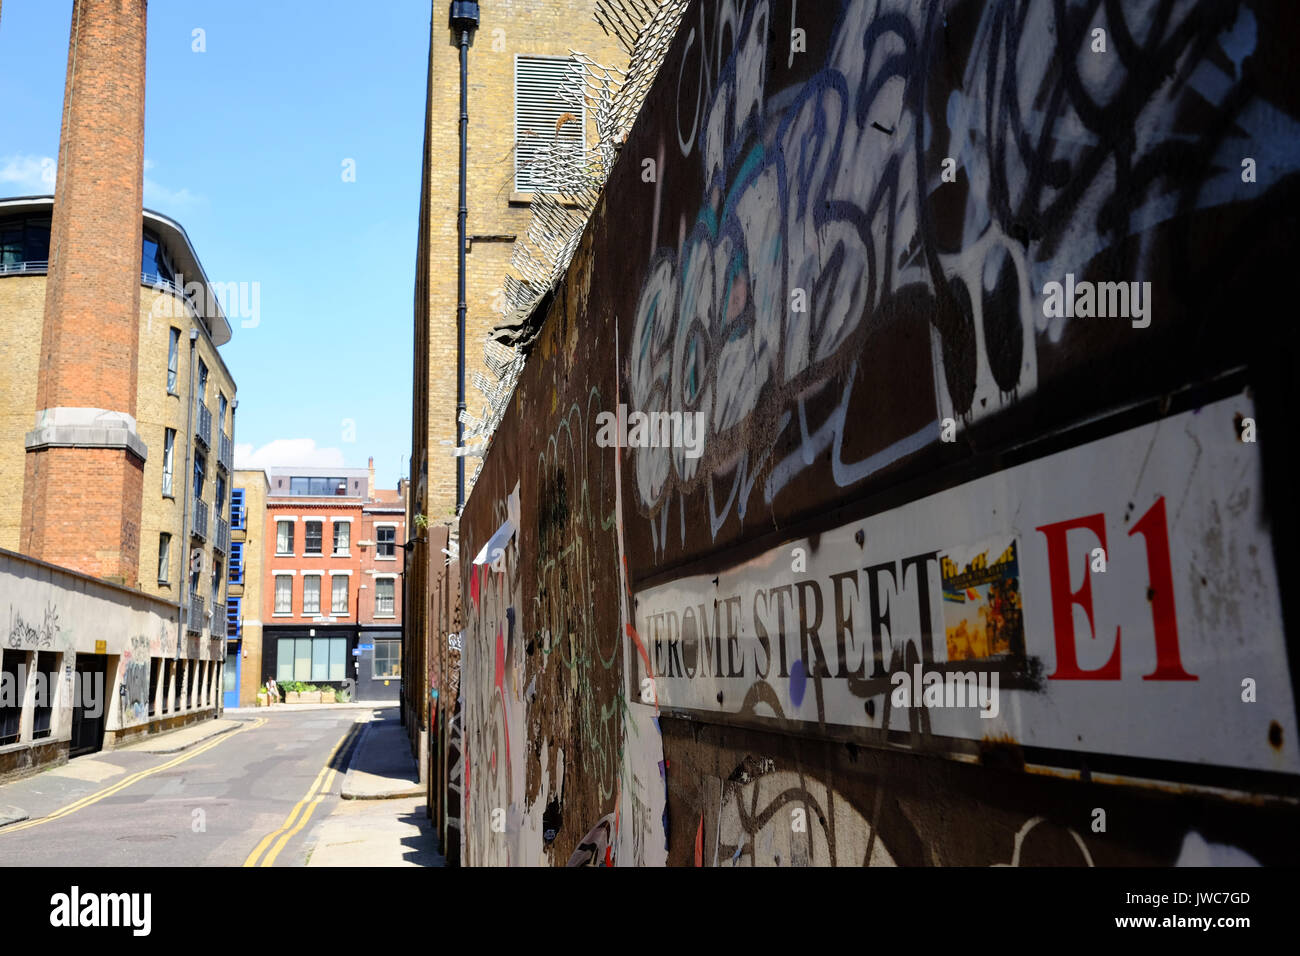 Des graffitis sur les murs de la rue Jerome dans l'East End londonien Banque D'Images